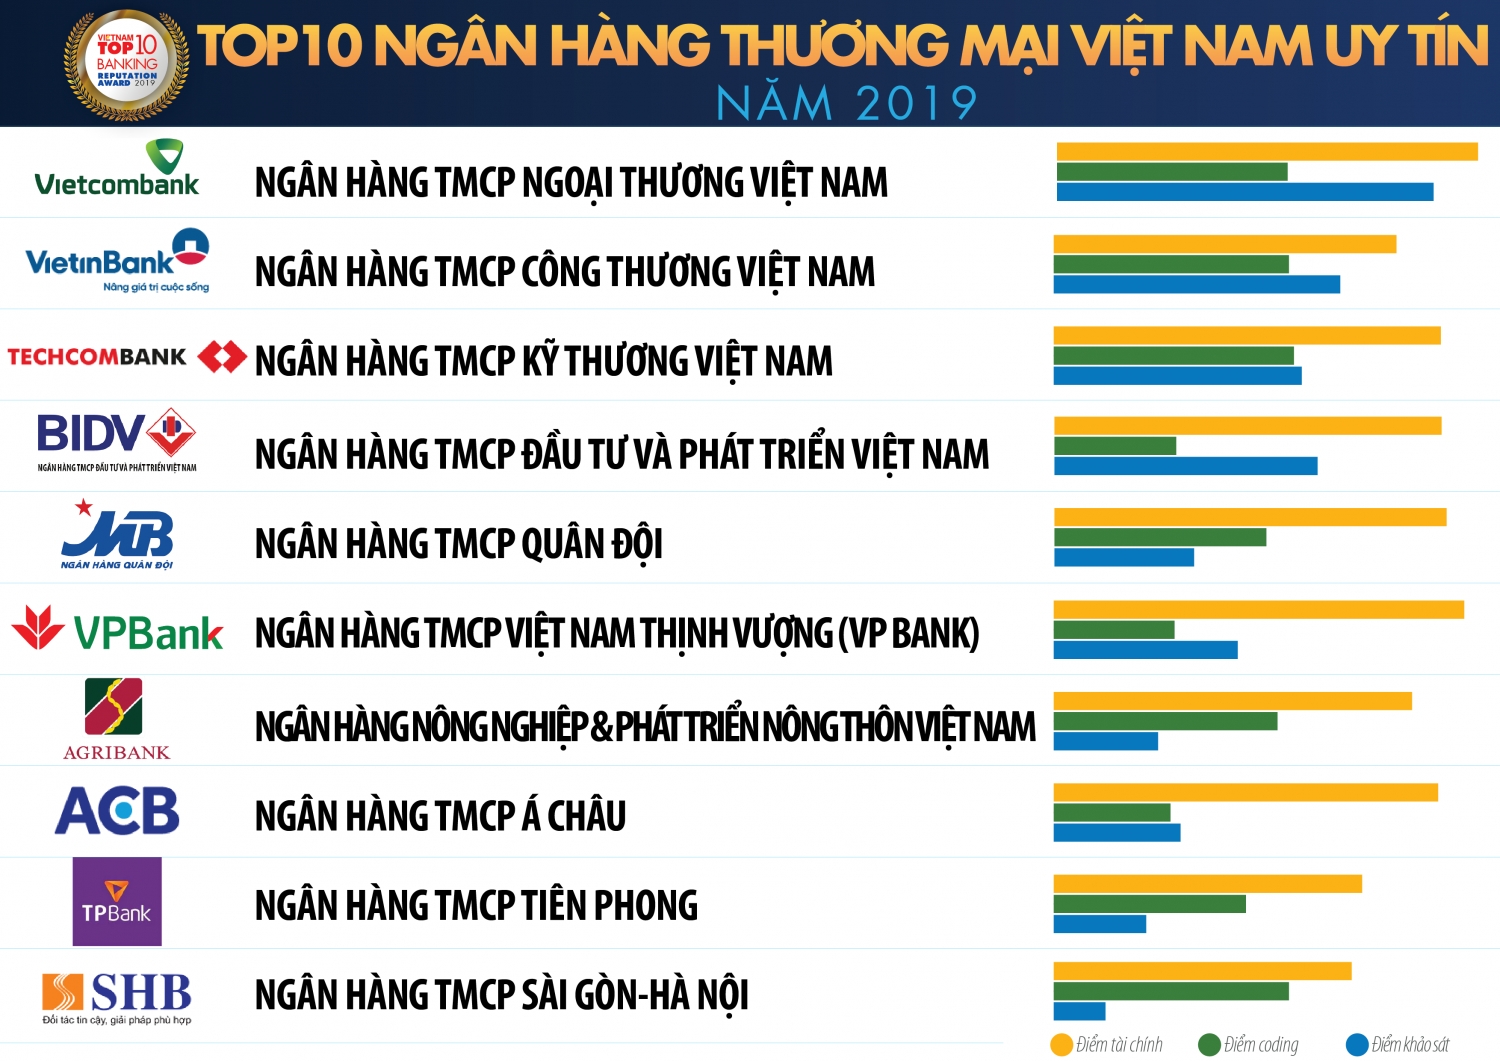 vietcombank vietinbank techcombank giu top 3 ngan hang thuong mai viet nam uy tin nam 2019